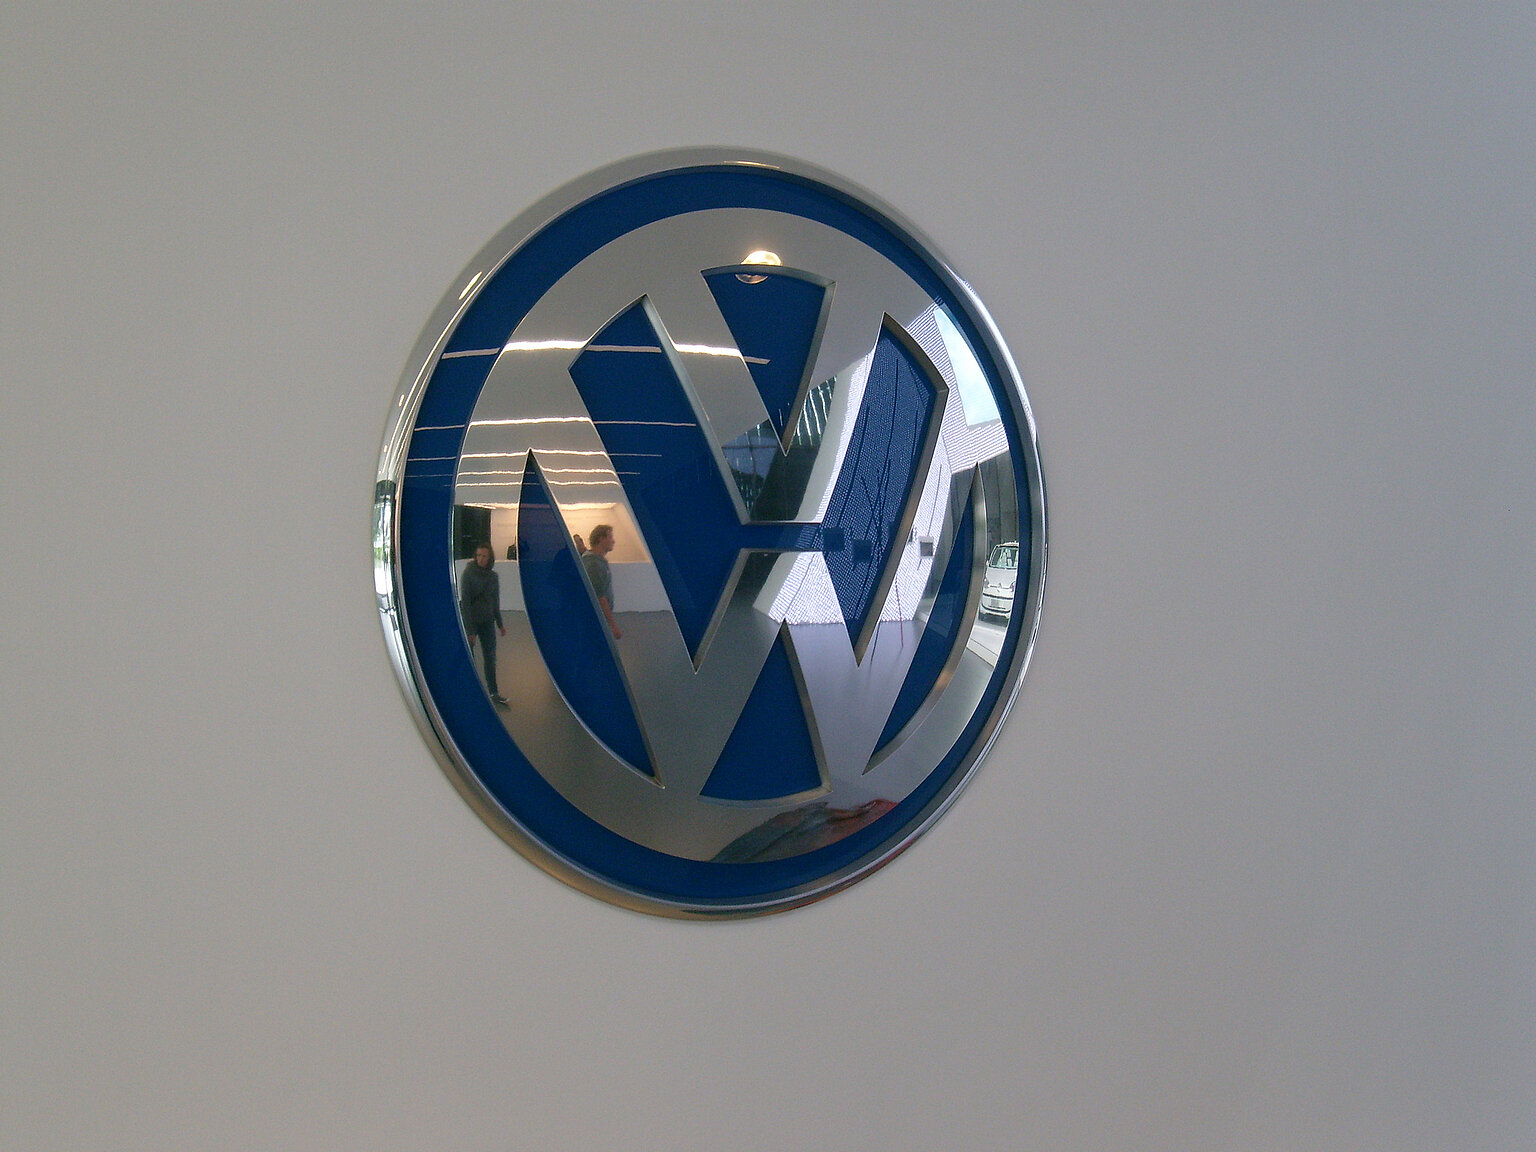  – VW-Emblem Foto: Bruno Kussler Marques / CC BY